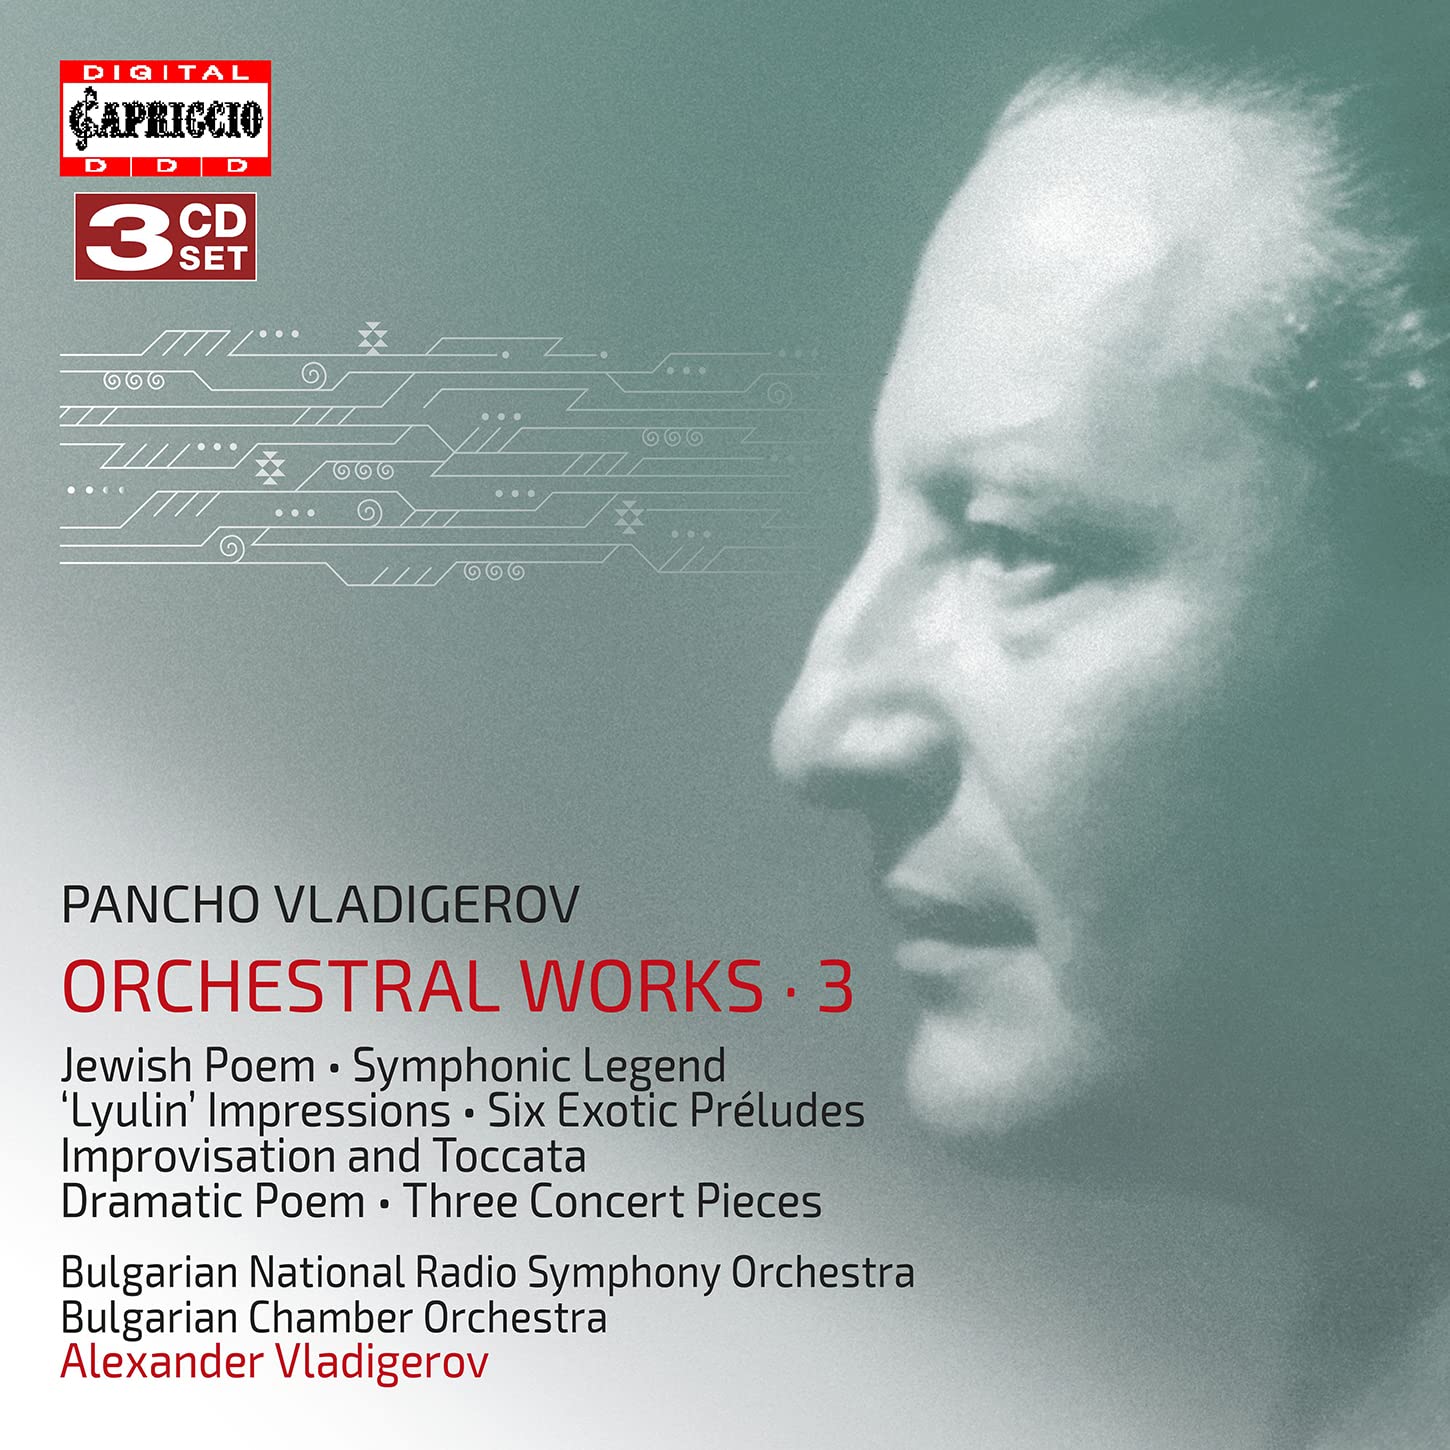 Audio Cd Pancho Vladigerov - Orchestral Works, Vol.3 (3 Cd) NUOVO SIGILLATO, EDIZIONE DEL 21/02/2022 SUBITO DISPONIBILE